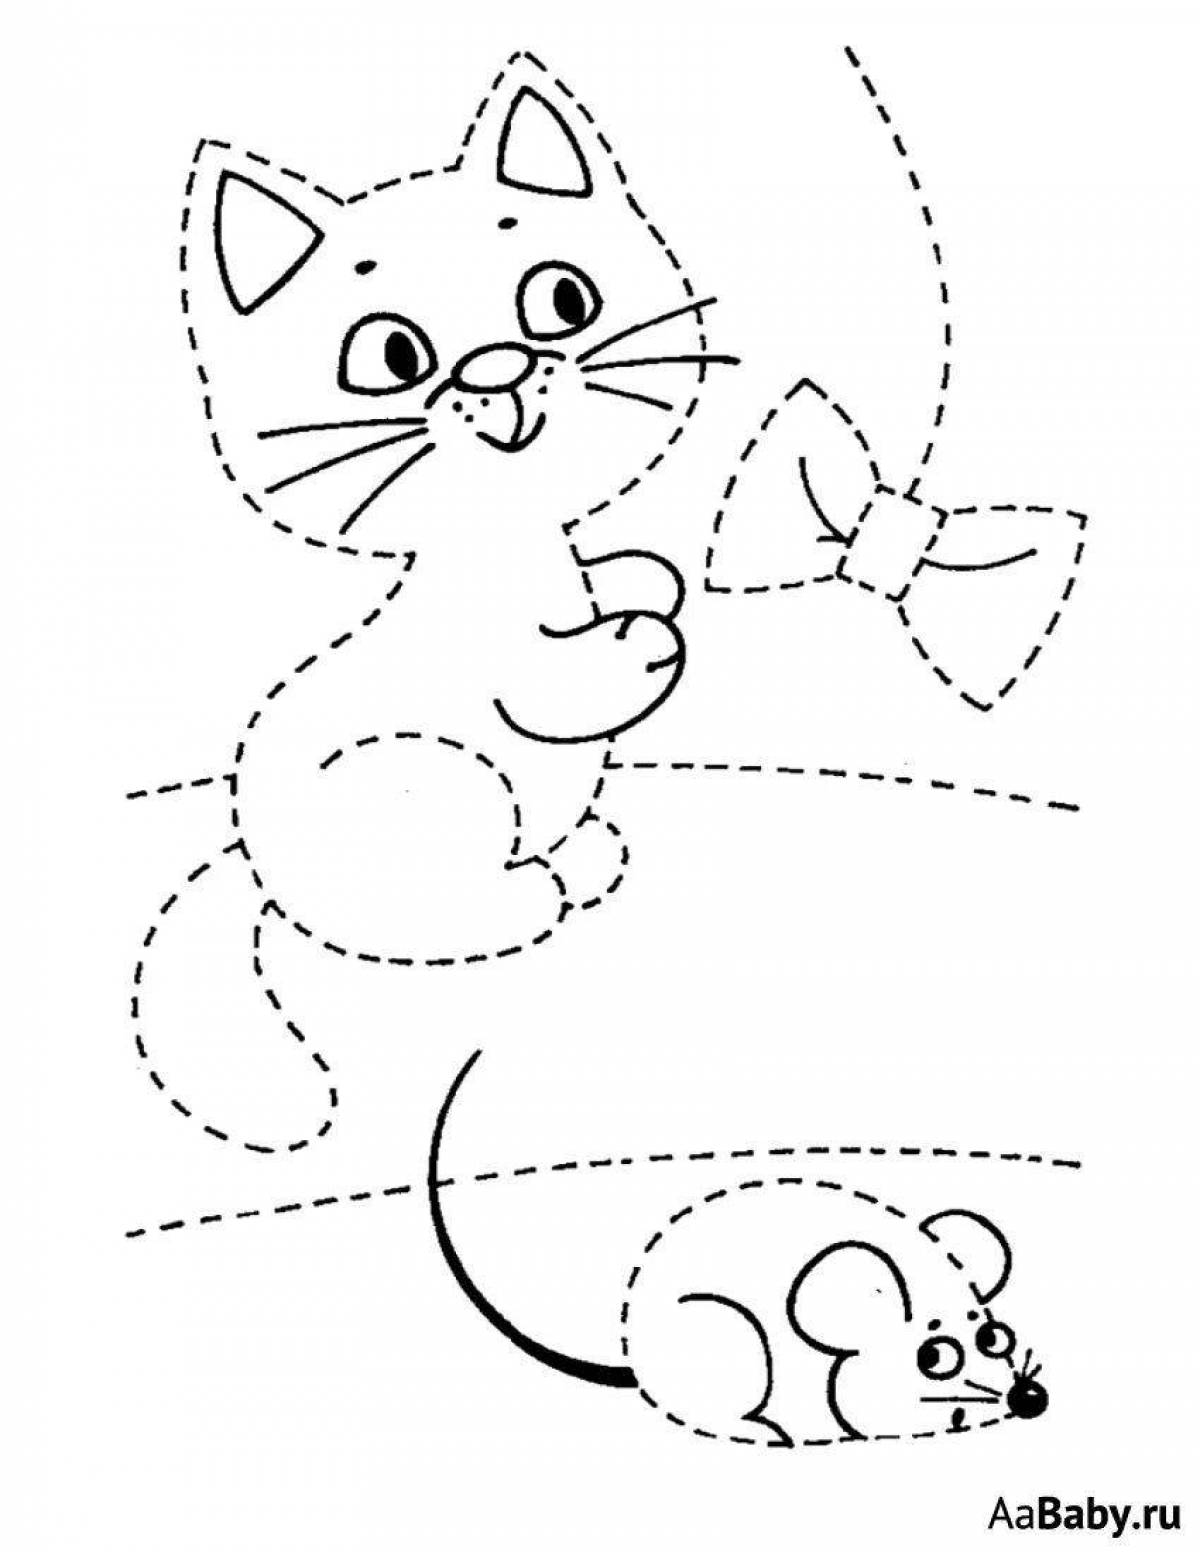 Страница раскраски общительной пунктирной кошки